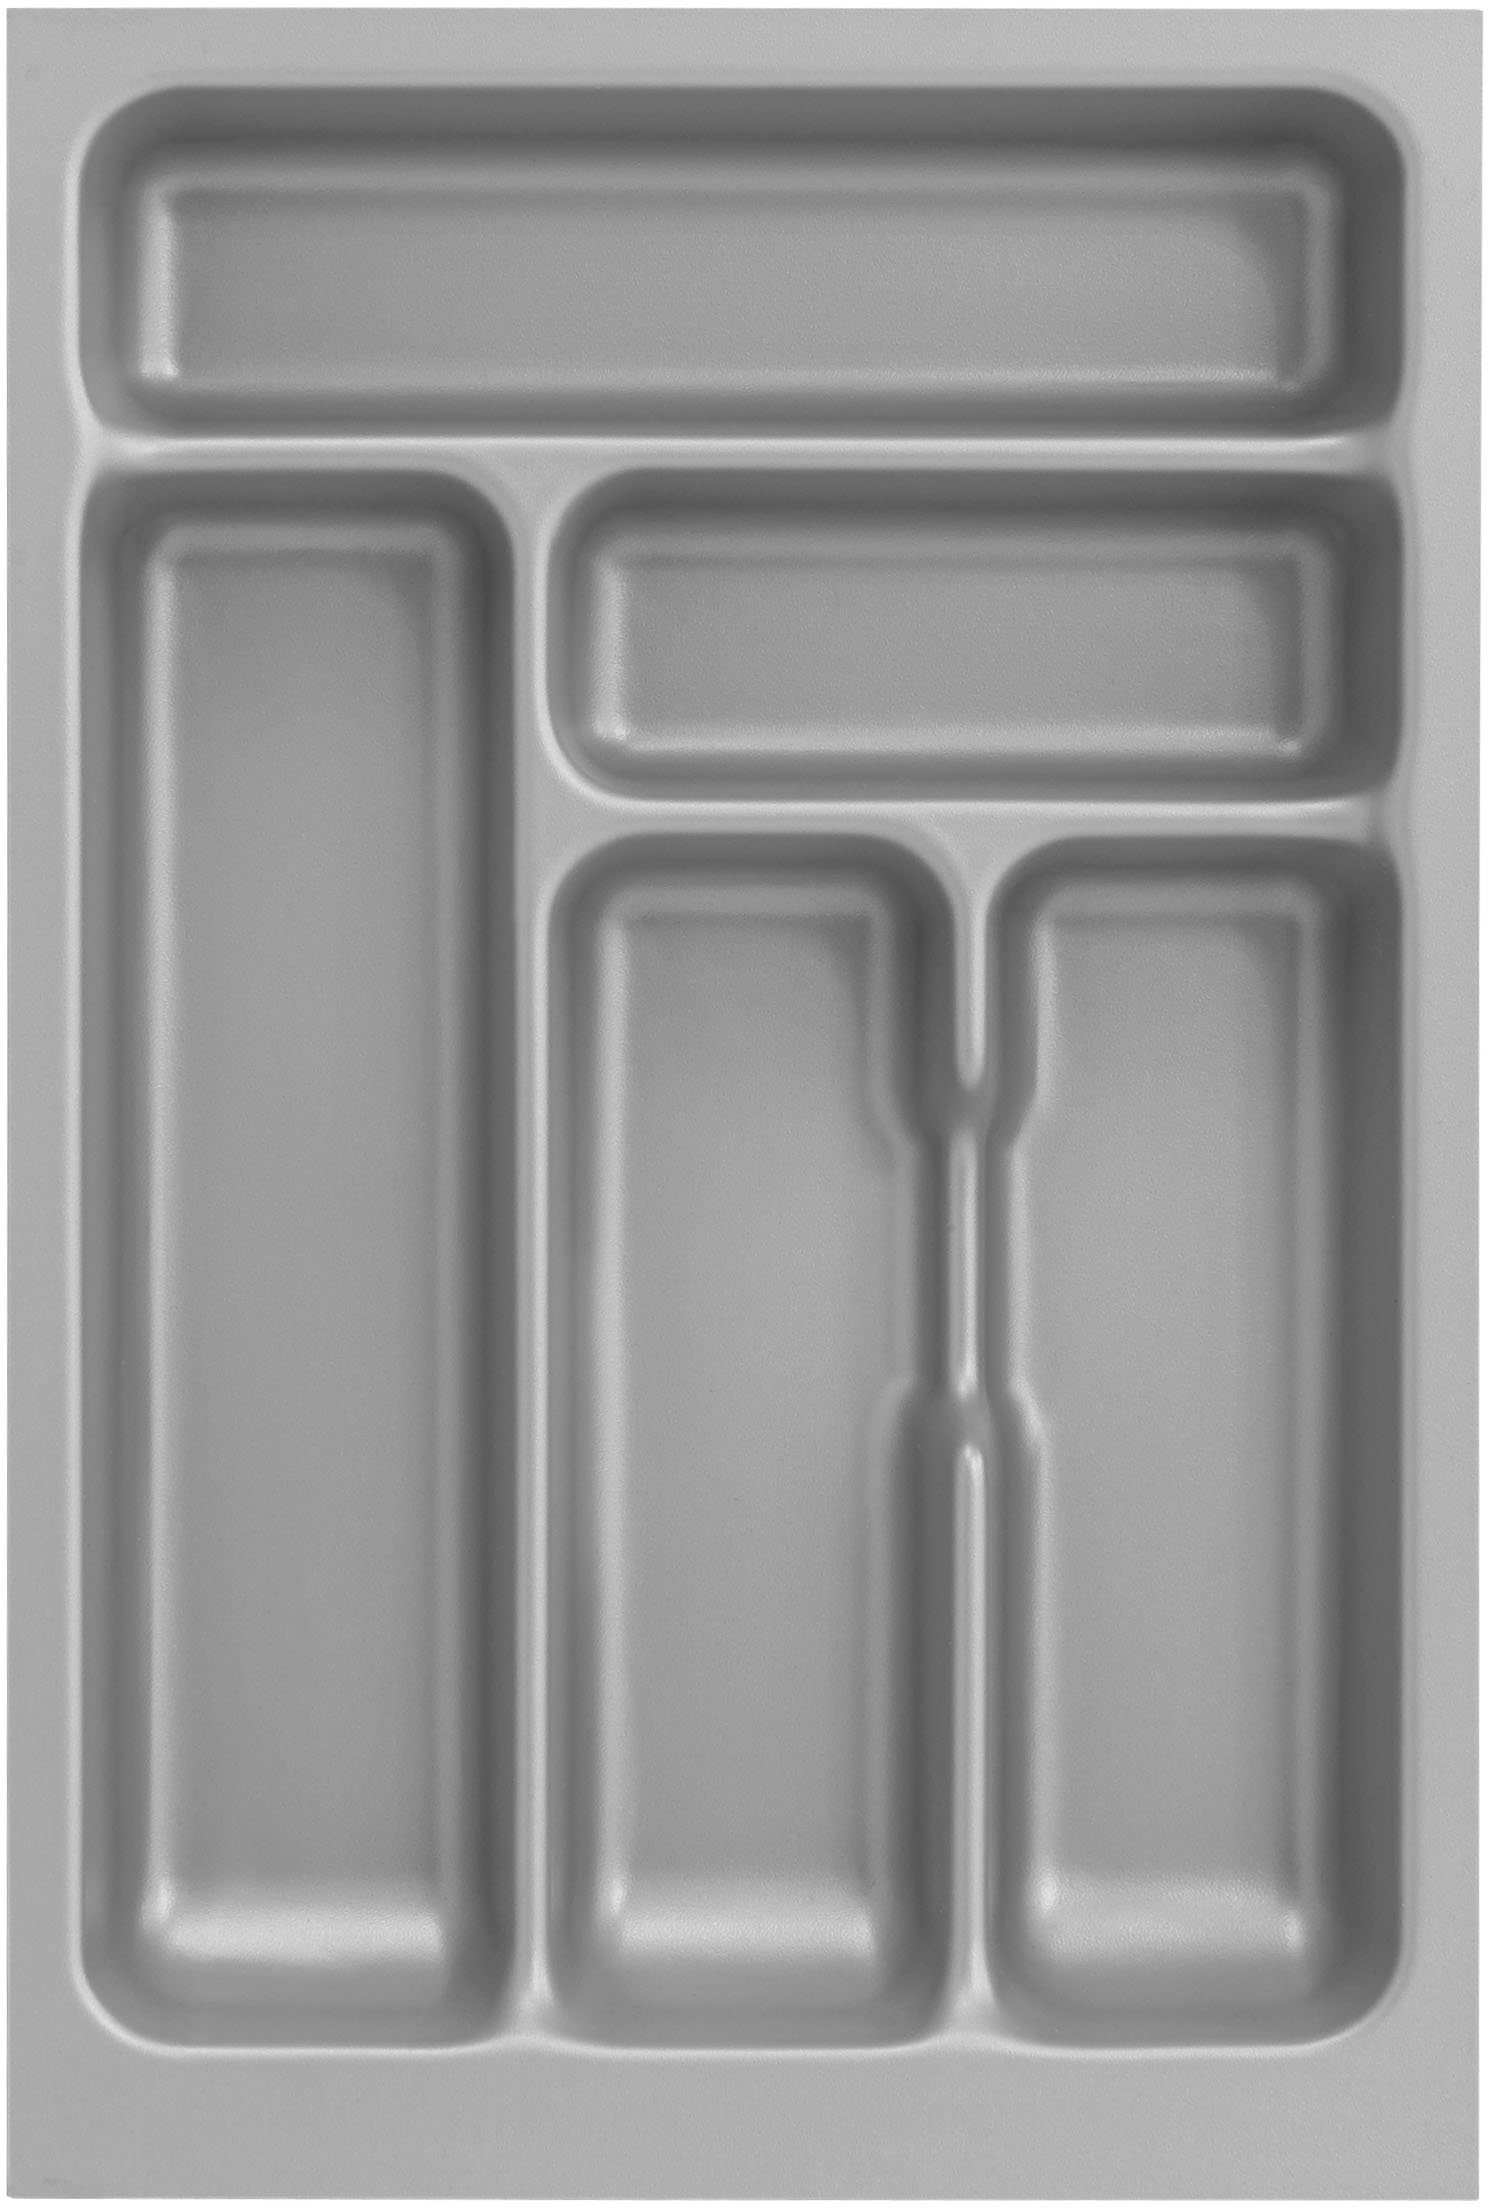 OPTIFIT Küche Safeli, Breite cm, oder wahlweise ohne 270 mit weiß | weiß/weiß Hanseatic-E-Geräte